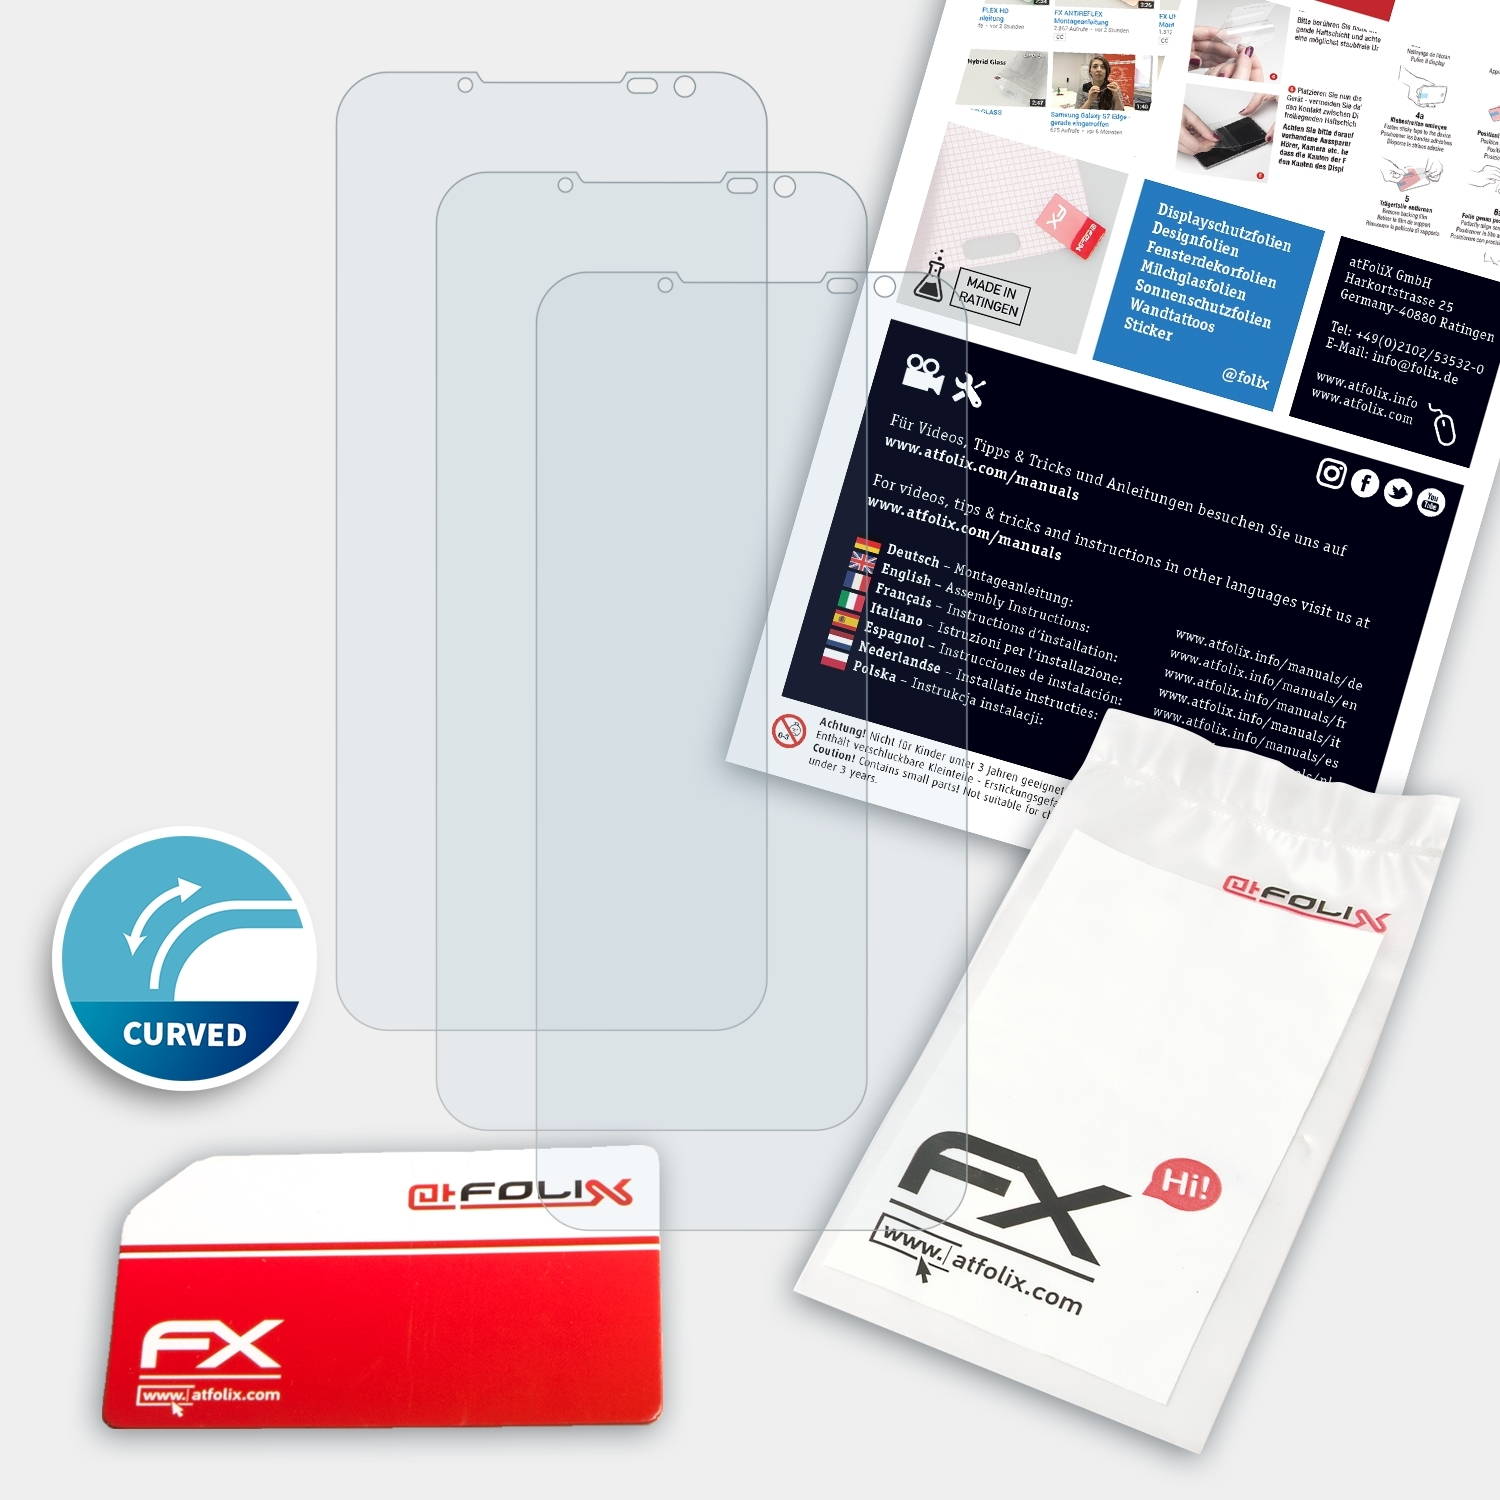 ATFOLIX 3x FX-ActiFleX Pro) 6S Nubia Displayschutz(für Red Magic